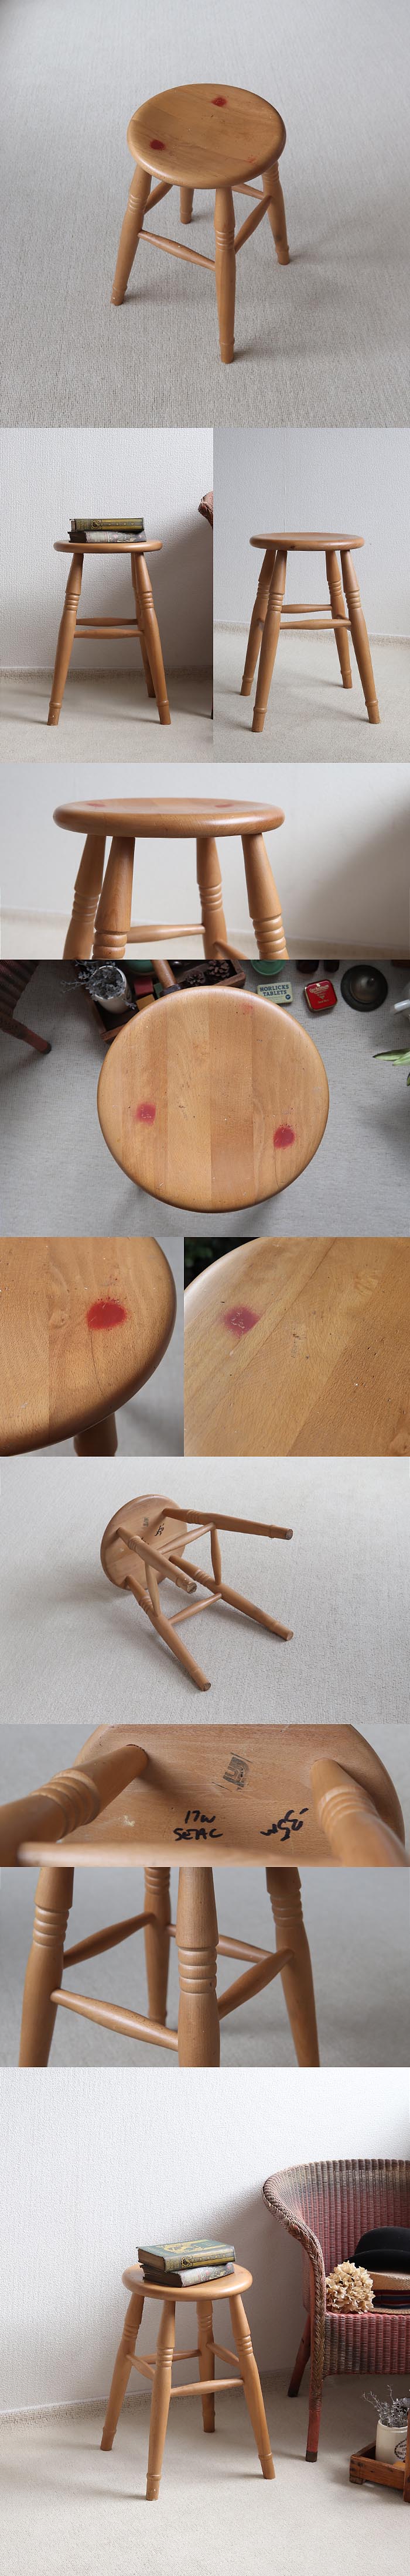 英国アンティーク木製スツール/丸イス椅子/チェア/ディスプレイ台(73-187)